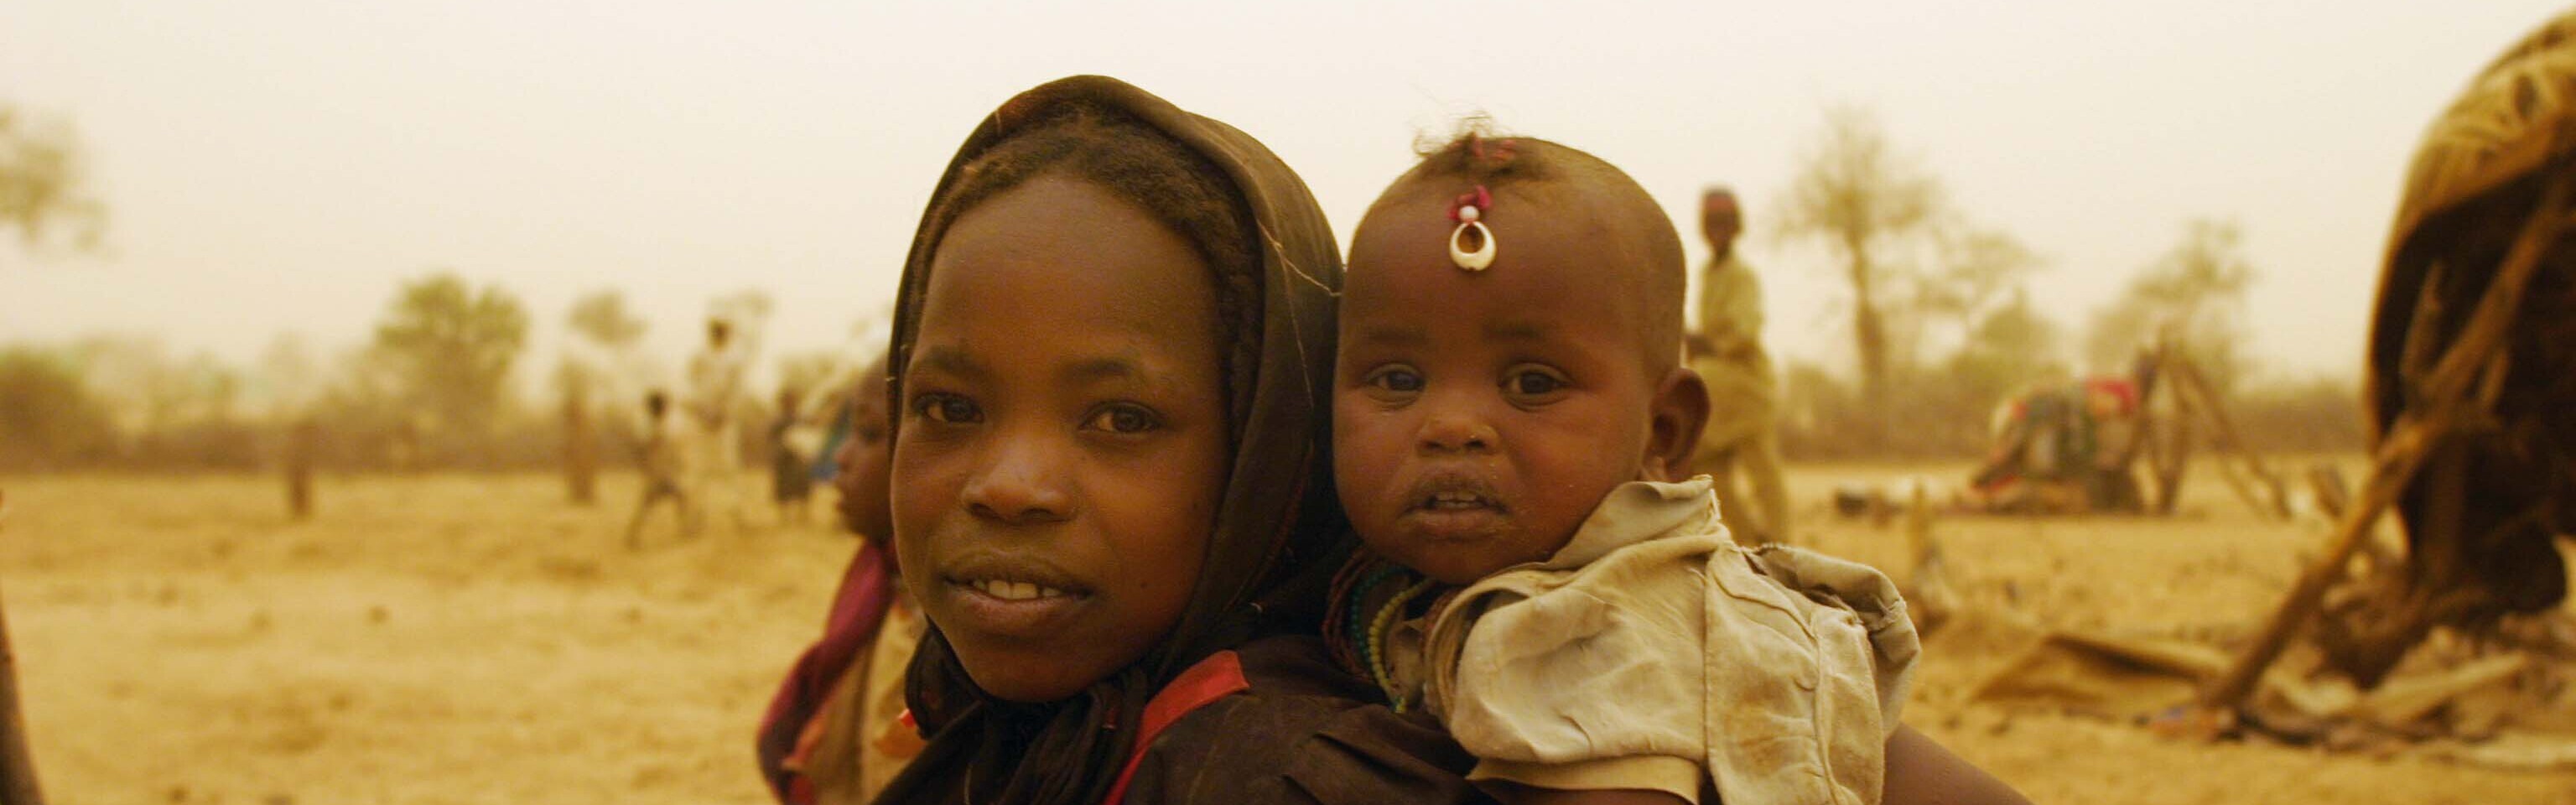 Während einer Dürre im Tschad trägt ein Mädchen ein Baby durch die Wüste. Die Auswirkungen von El Niño treffen die Länder im Osten Afrikas schwer.